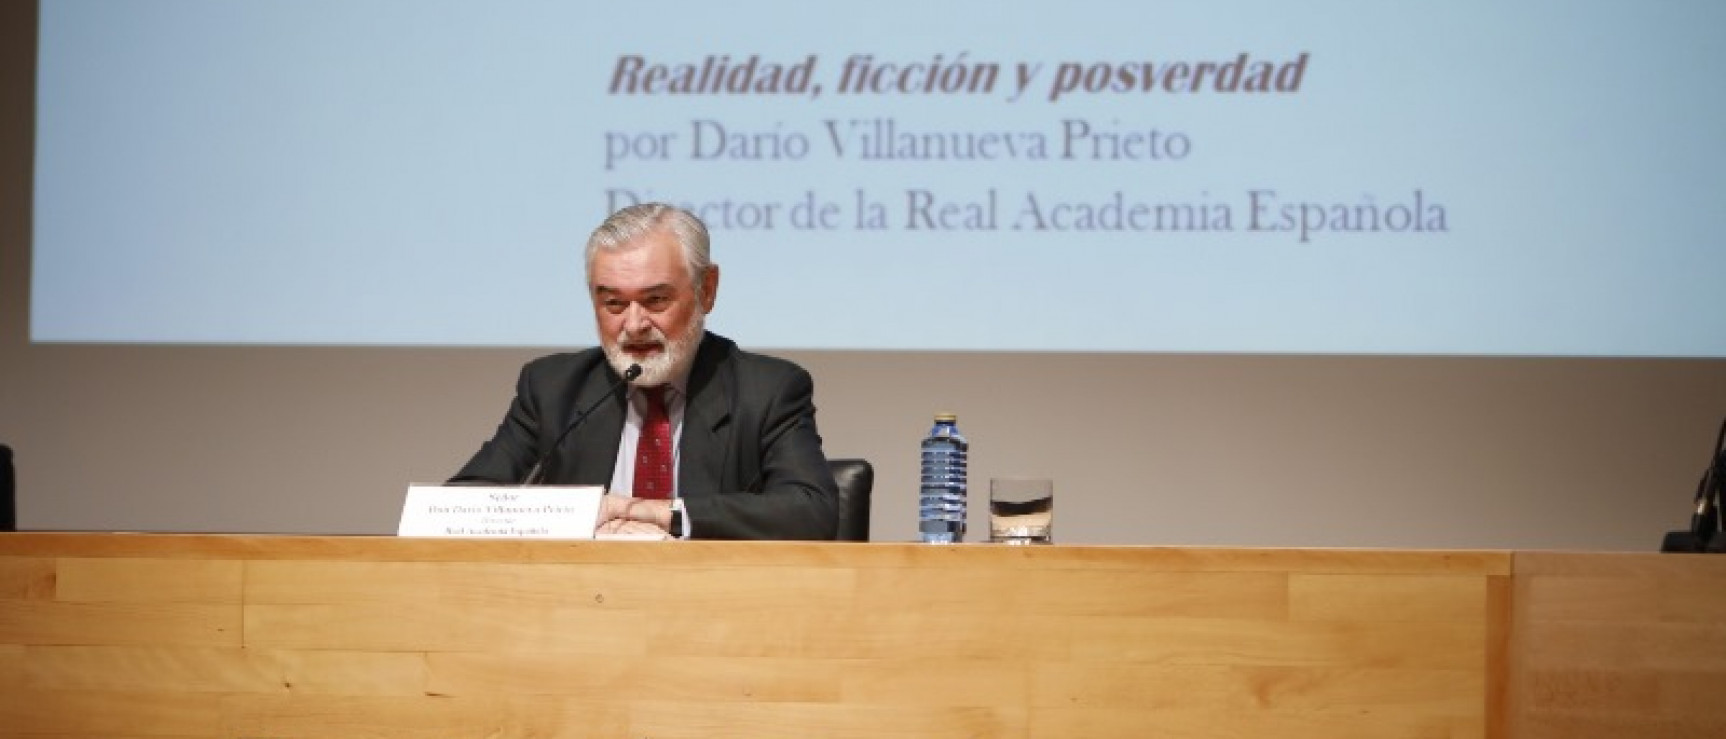 Darío Villanueva durante su conferencia. Foto: Fundación Barrié.